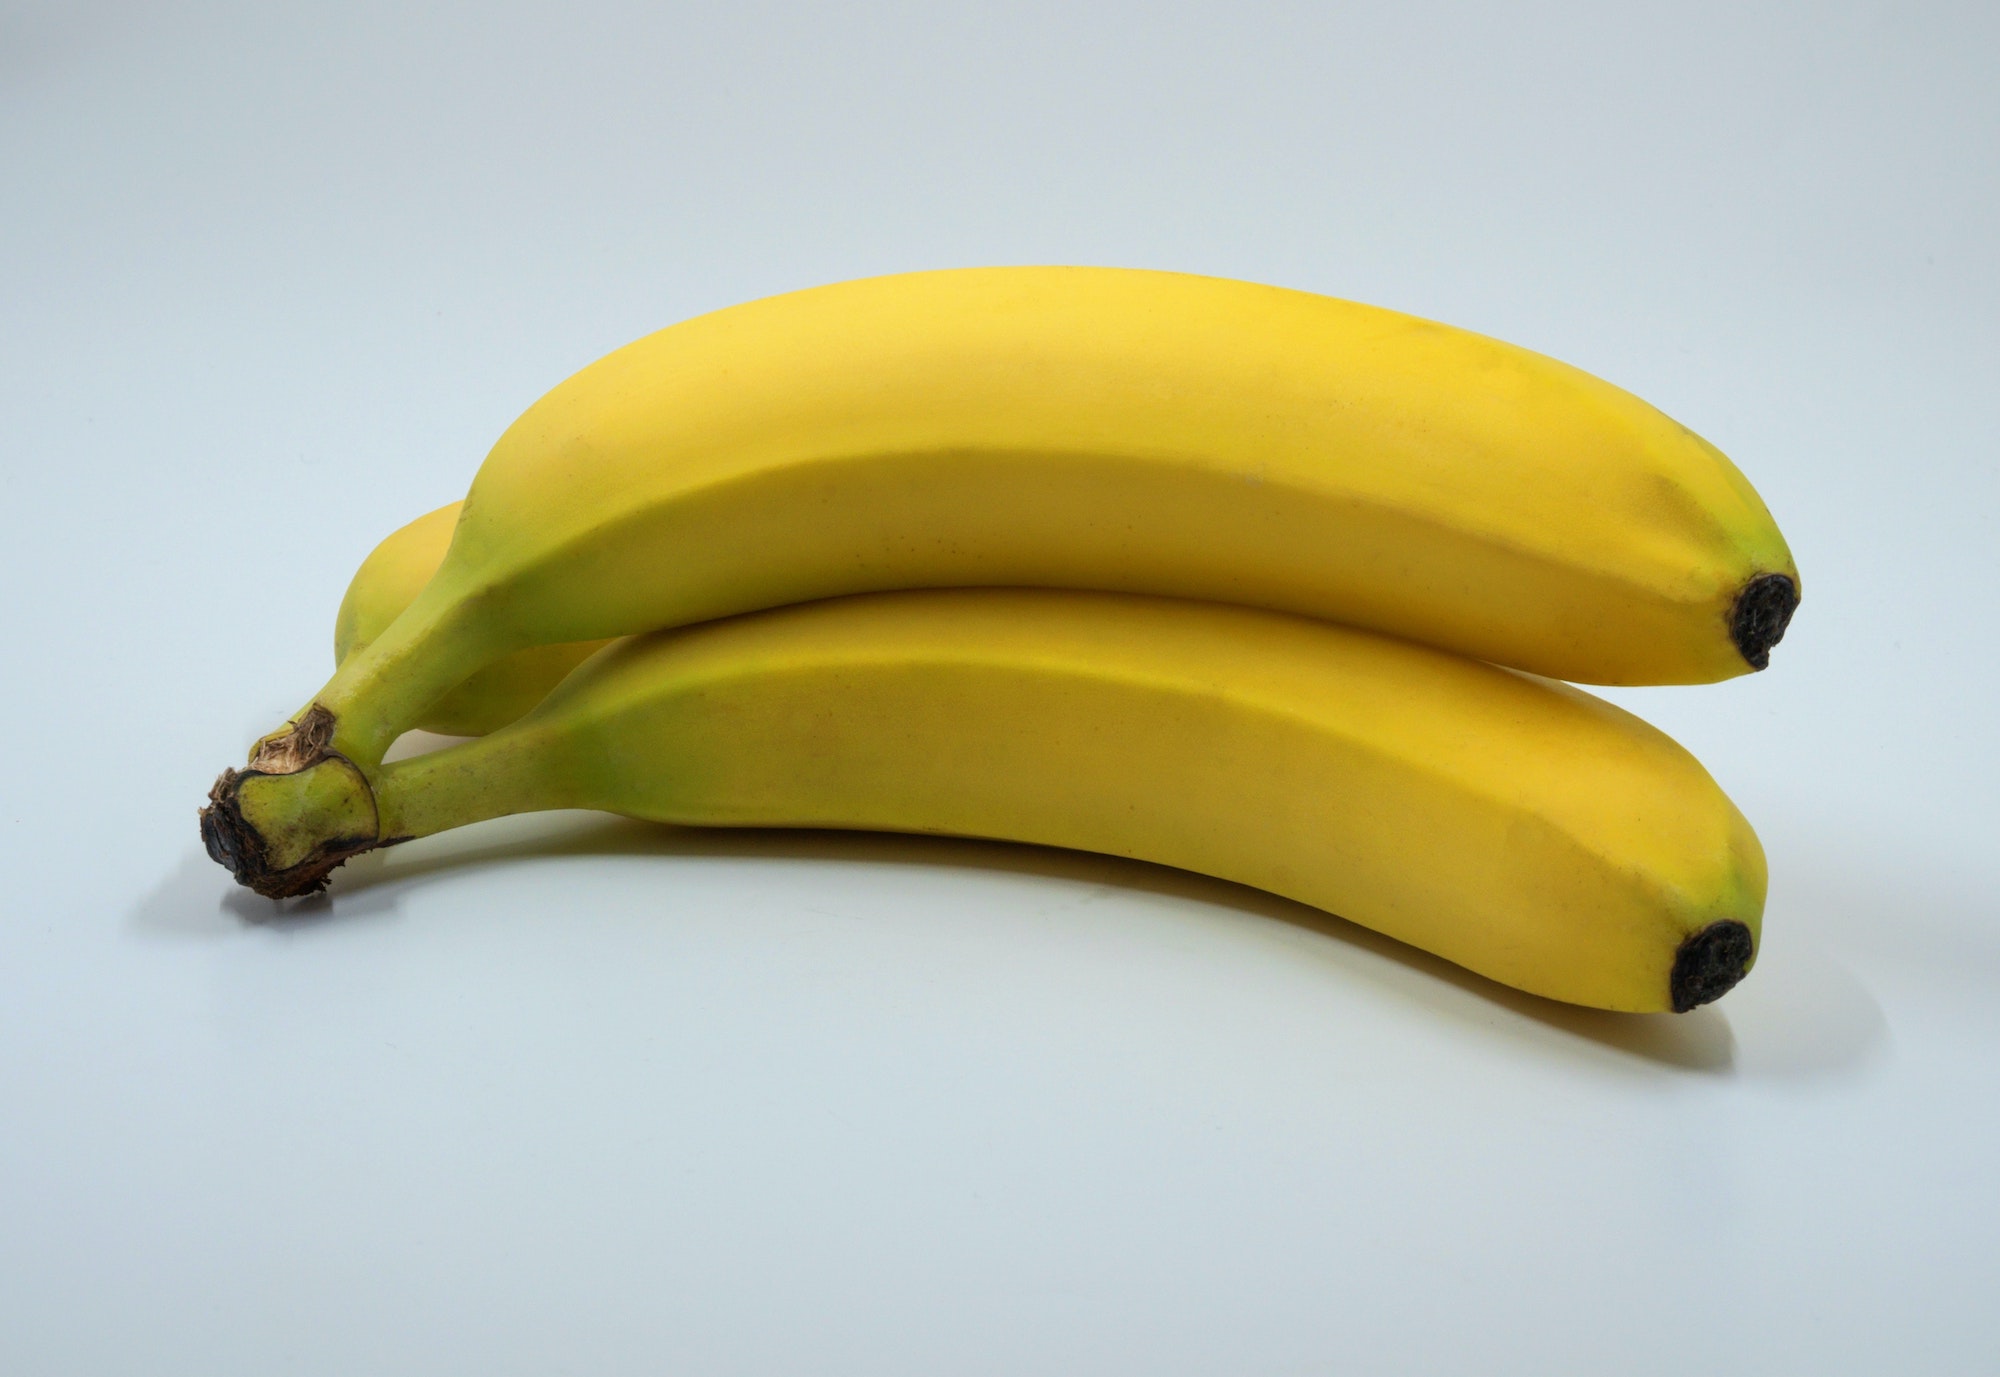 Bananas On Side